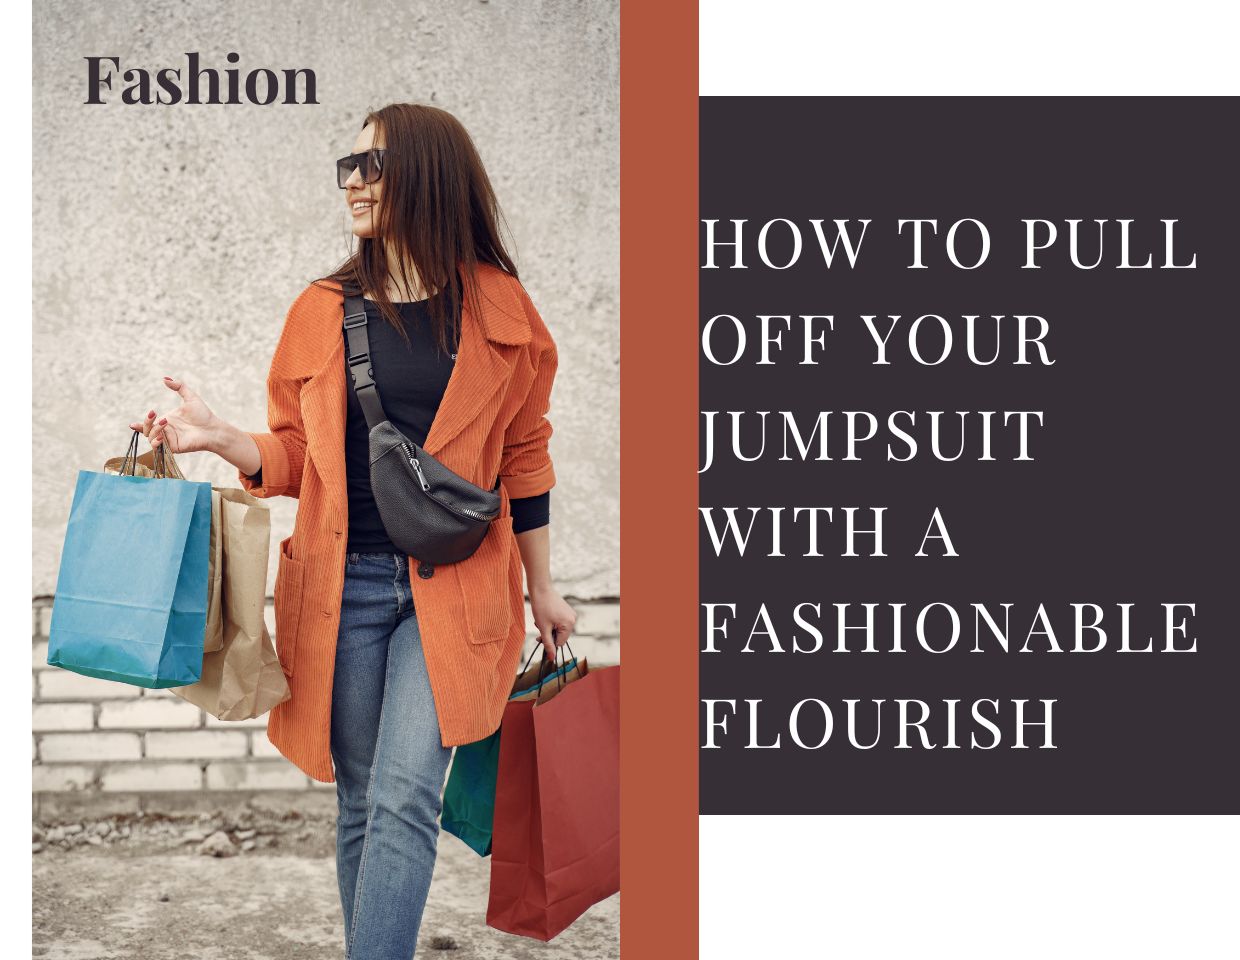 pull-jumpsuit-fashionable-flourish